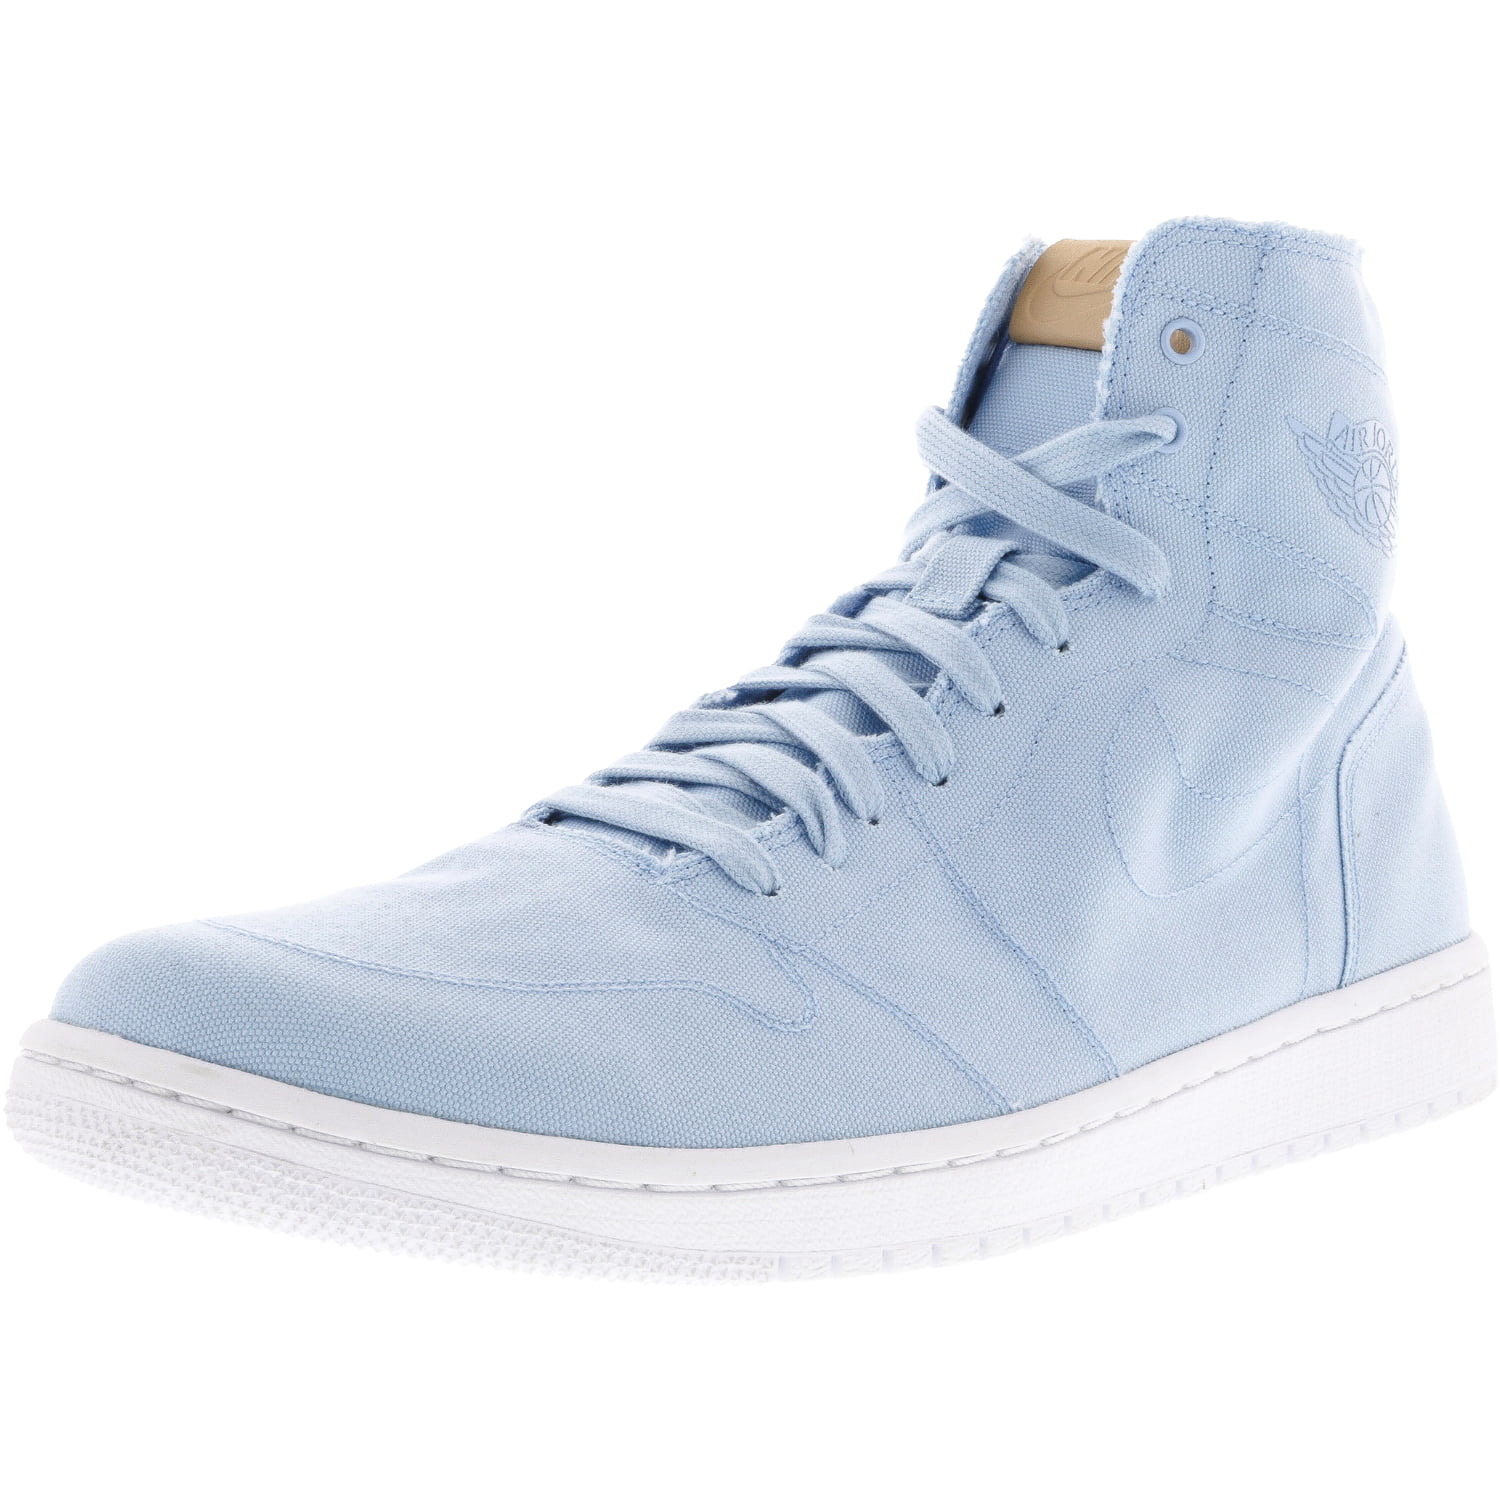 Nike Men's Air Jordan 1 Retro High Decon Ice Blue / White-Vachetta Tan High-Top Canvas Fashion Sneaker - 13M